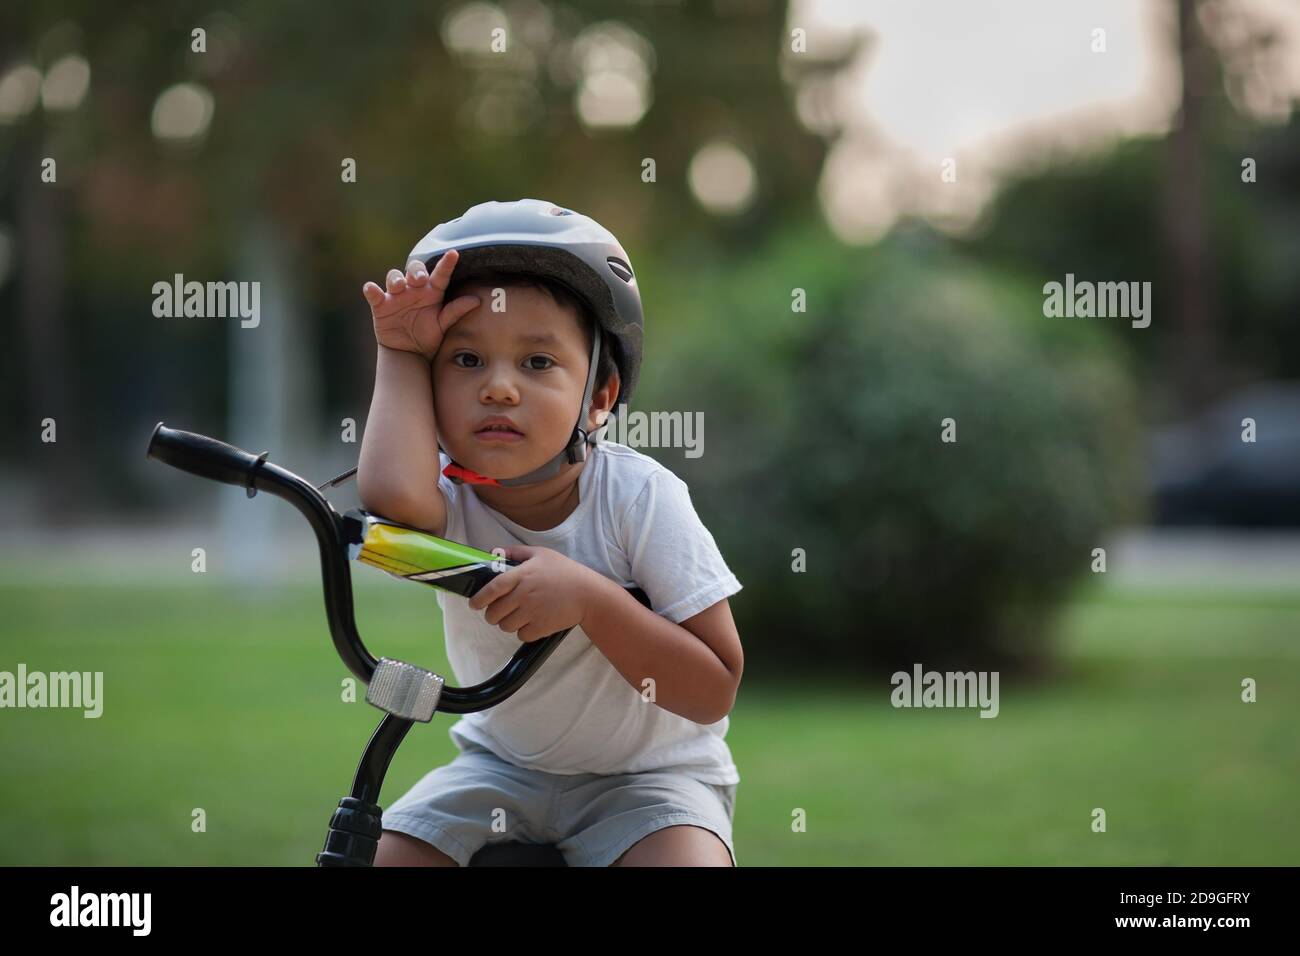 Un niño pequeño que se ve agotado o muestra la dificultad de montar una bicicleta por primera vez al sostener su mano a su frente y parecer infeliz. Foto de stock